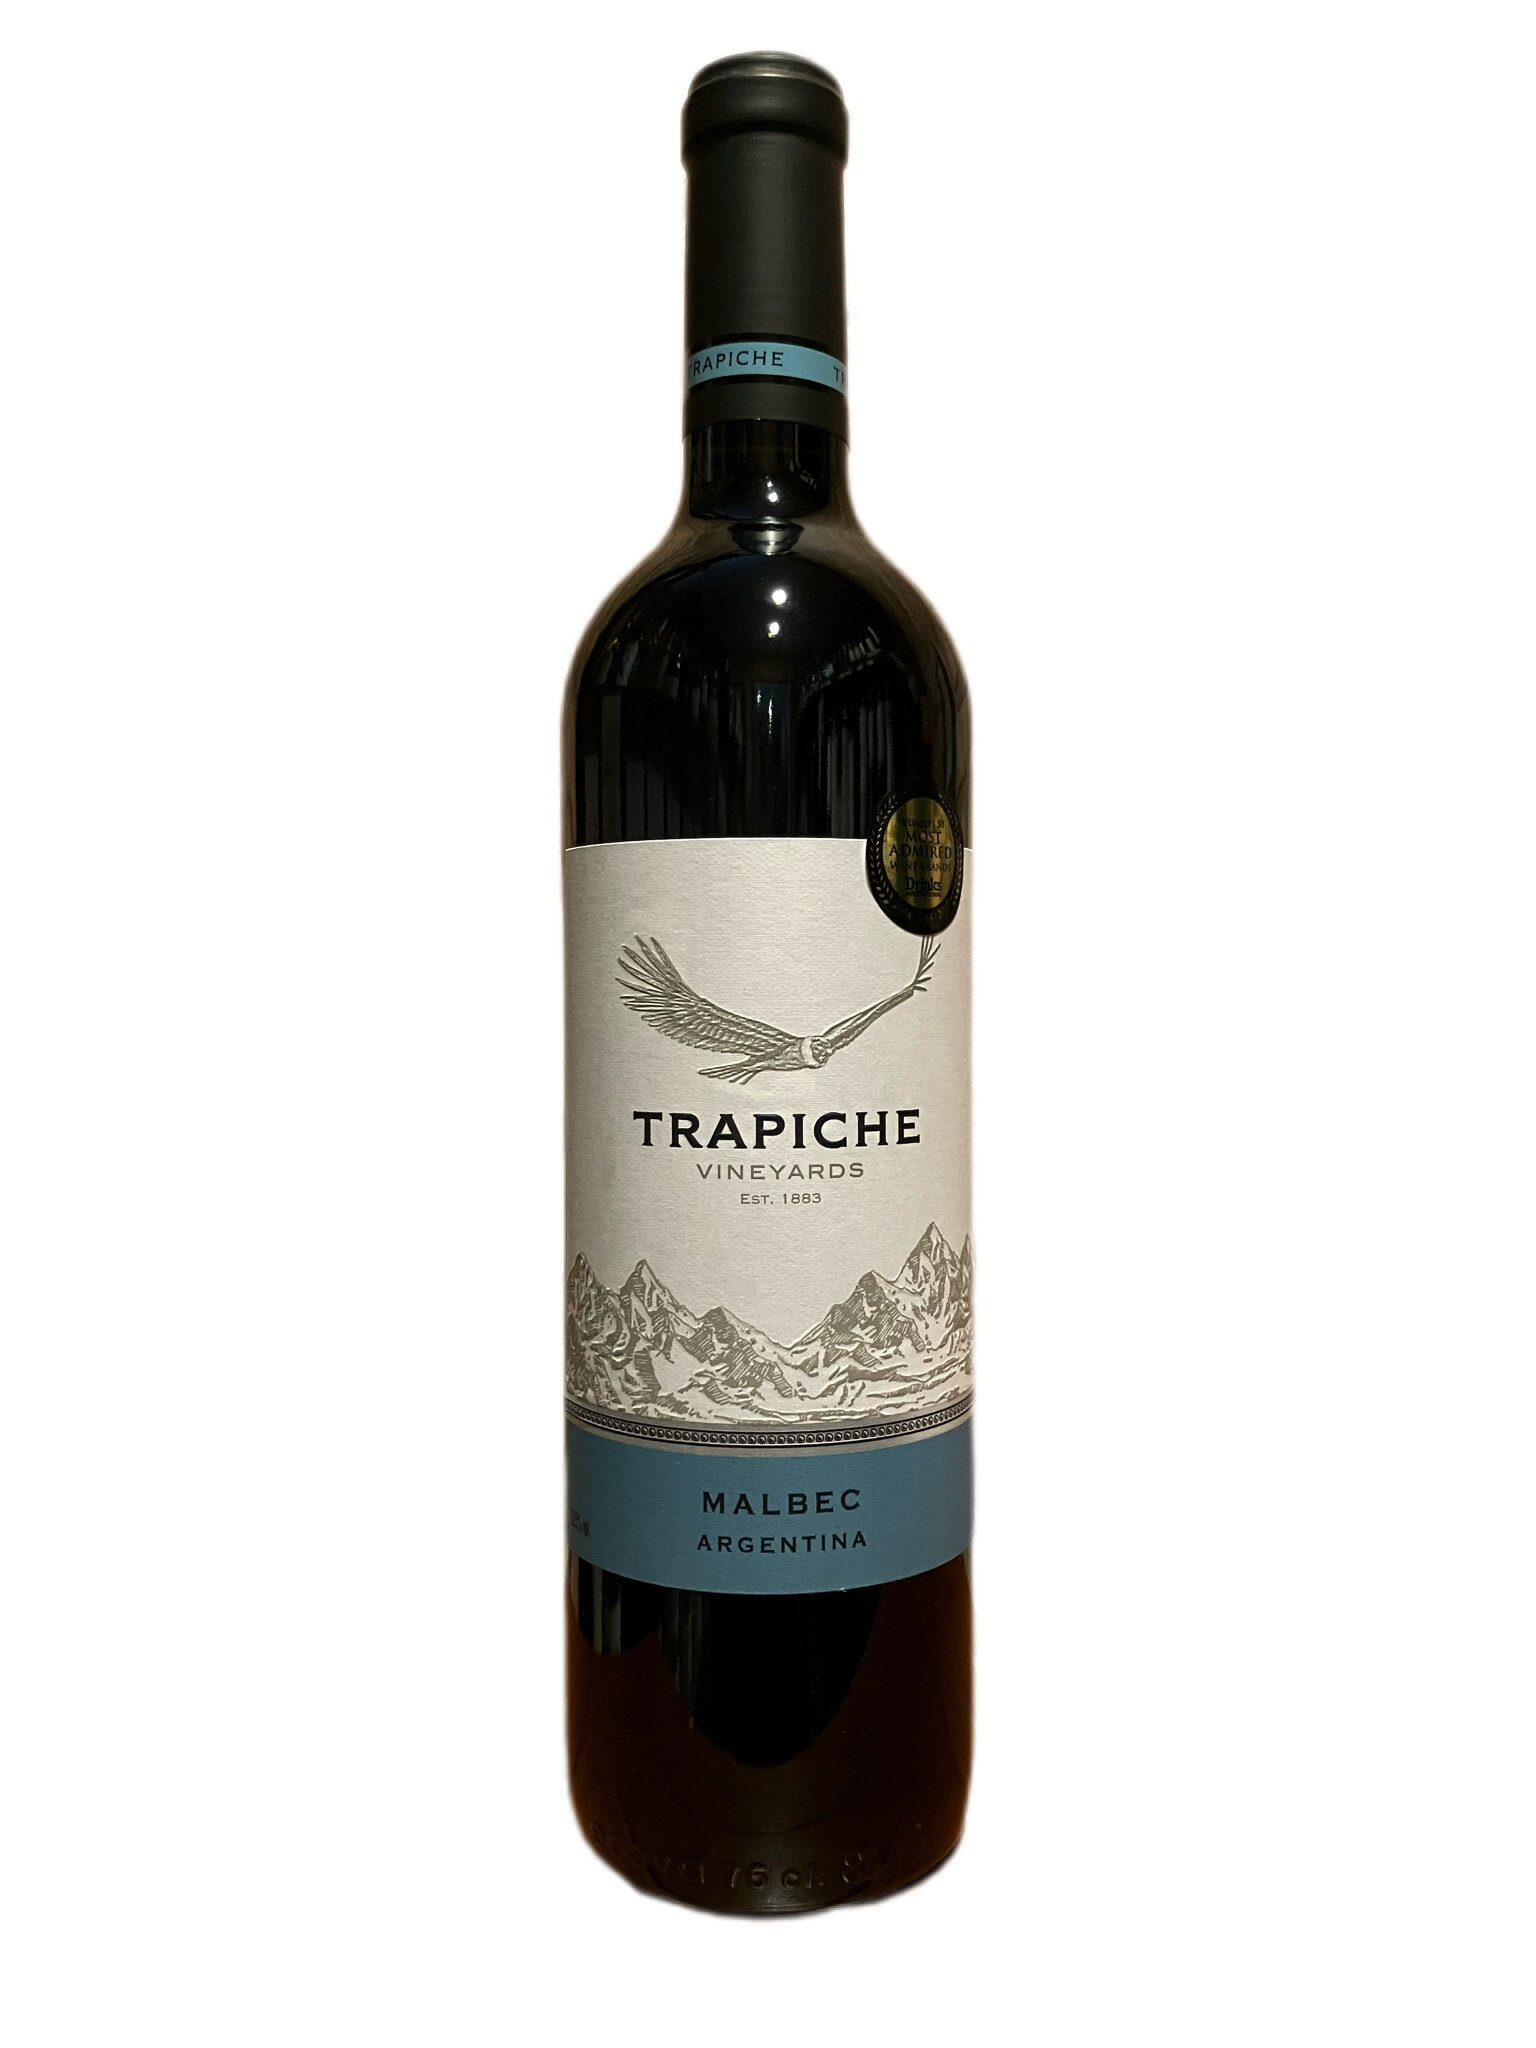 トラピチェ ヴィンヤーズ マルベック 2017 750ml アルゼンチン 赤ワイン アルゼンチン ミディアムボディ ヴィンテージ2017 ヴィンヤーズはアルゼンチン最大級のブドウ畑を所有するトラピチェ社が、その畑を選んで造ったこだわりのワイン。マルベックは、プラムやチェリーの香り、口中でトリュフやヴァニラを感じる、ふくよかなワイン。＊北海道、沖縄、離島などの一部地域では別途送料がかかります。＊当店後払い決済をお断りしております。 5